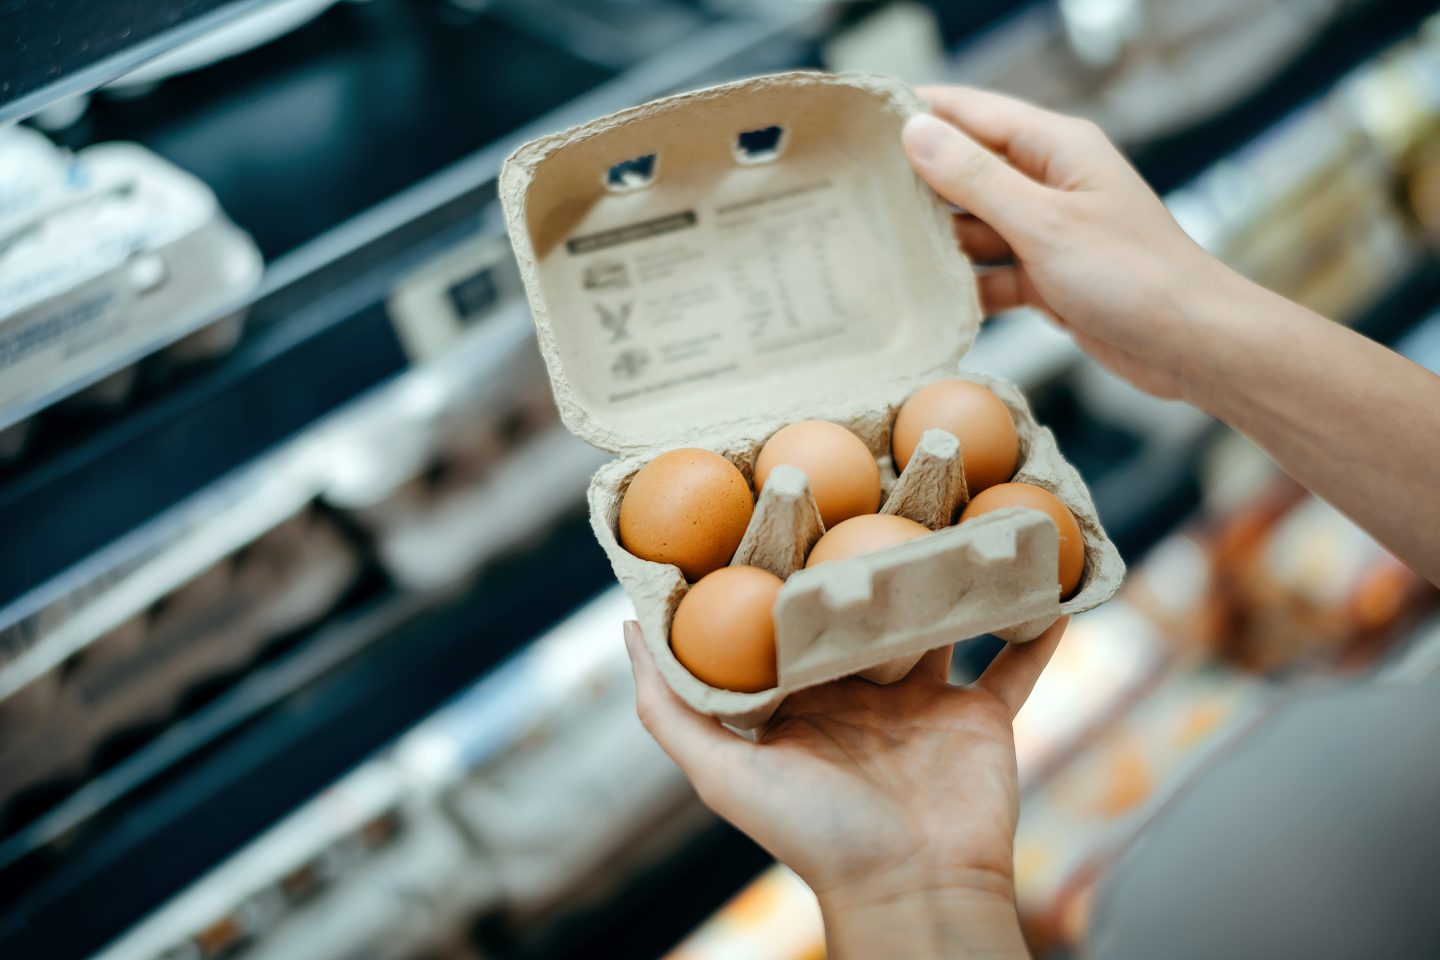 تسع فوائد صحية لتناول البيض، يجب عليك معرفتها